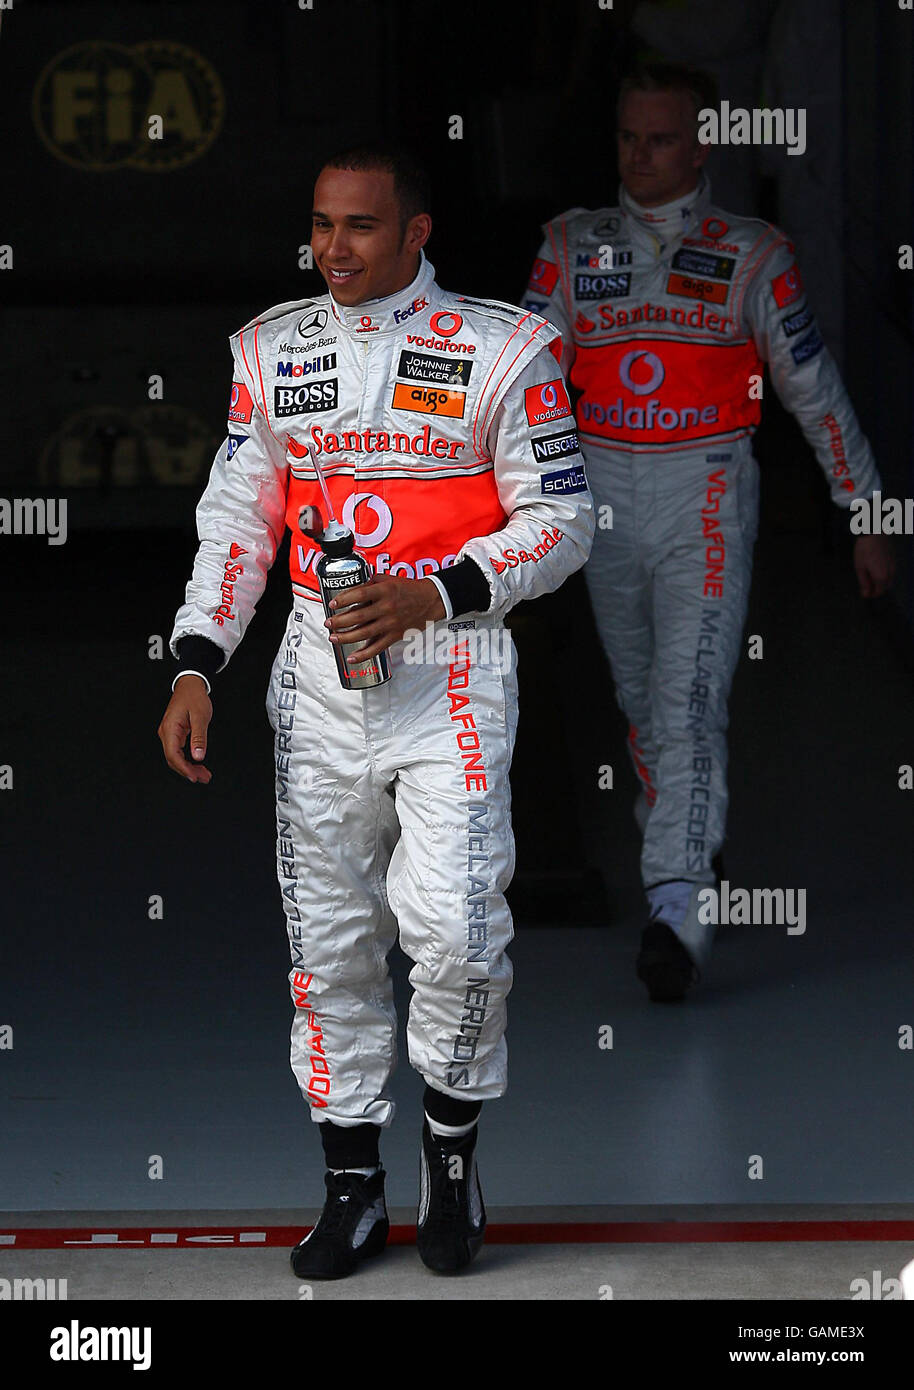 Il Gran Bretagna Lewis Hamilton e il compagno di squadra Heikki Kovalainen durante le qualifiche all'Albert Park, Melbourne, Australia. Foto Stock